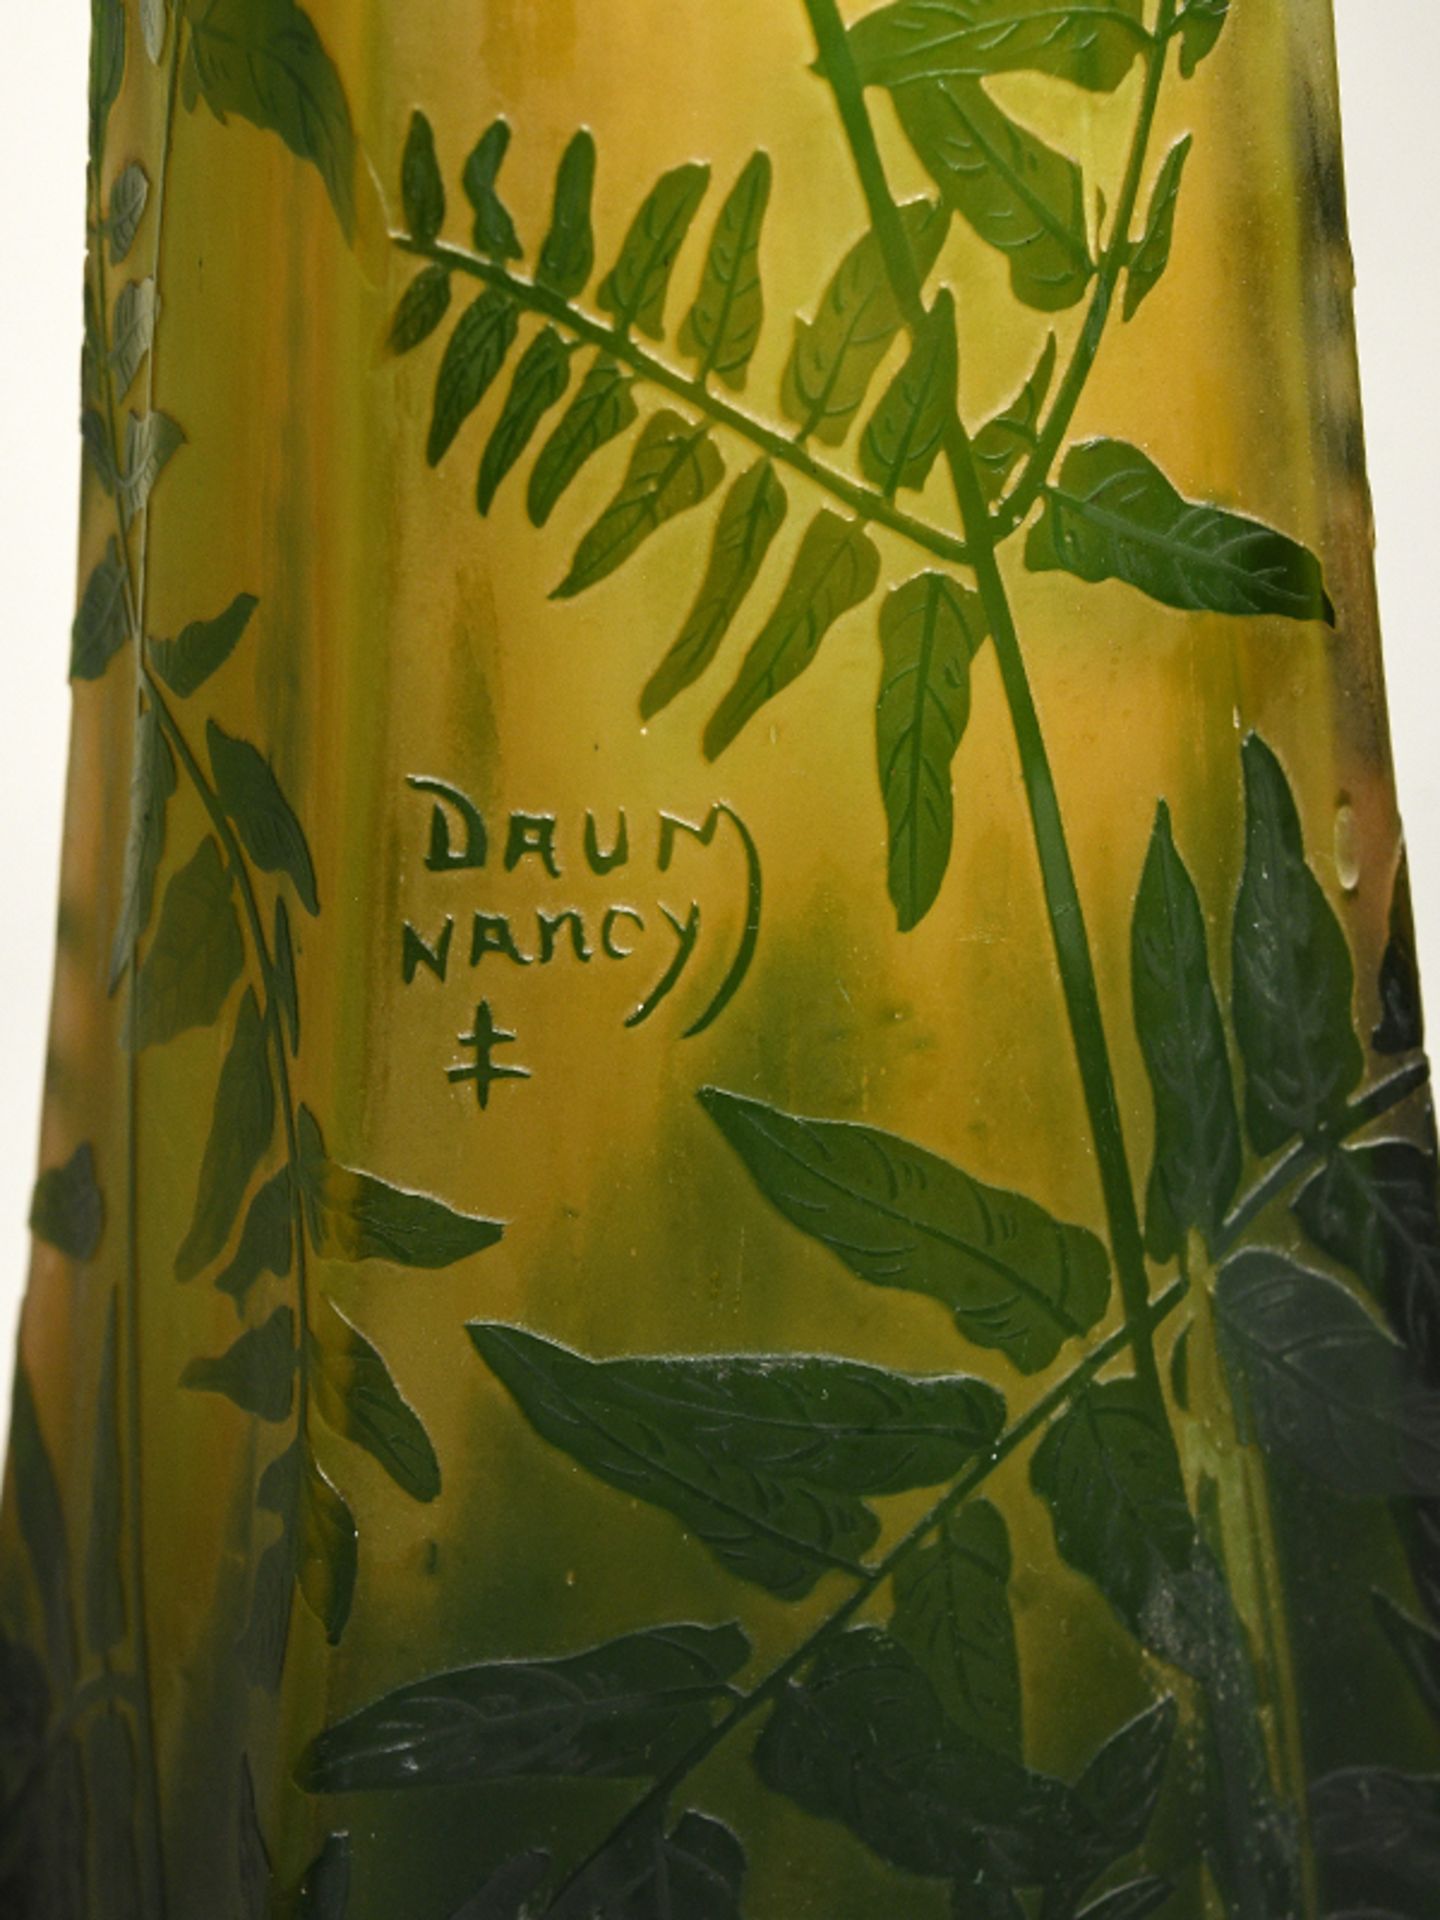 Große Jugendstil-Stangenvase mit Farndekor, Daum/Nancy (Frankreich), Anfang 20. Jh. Gelb-grün - Bild 7 aus 10